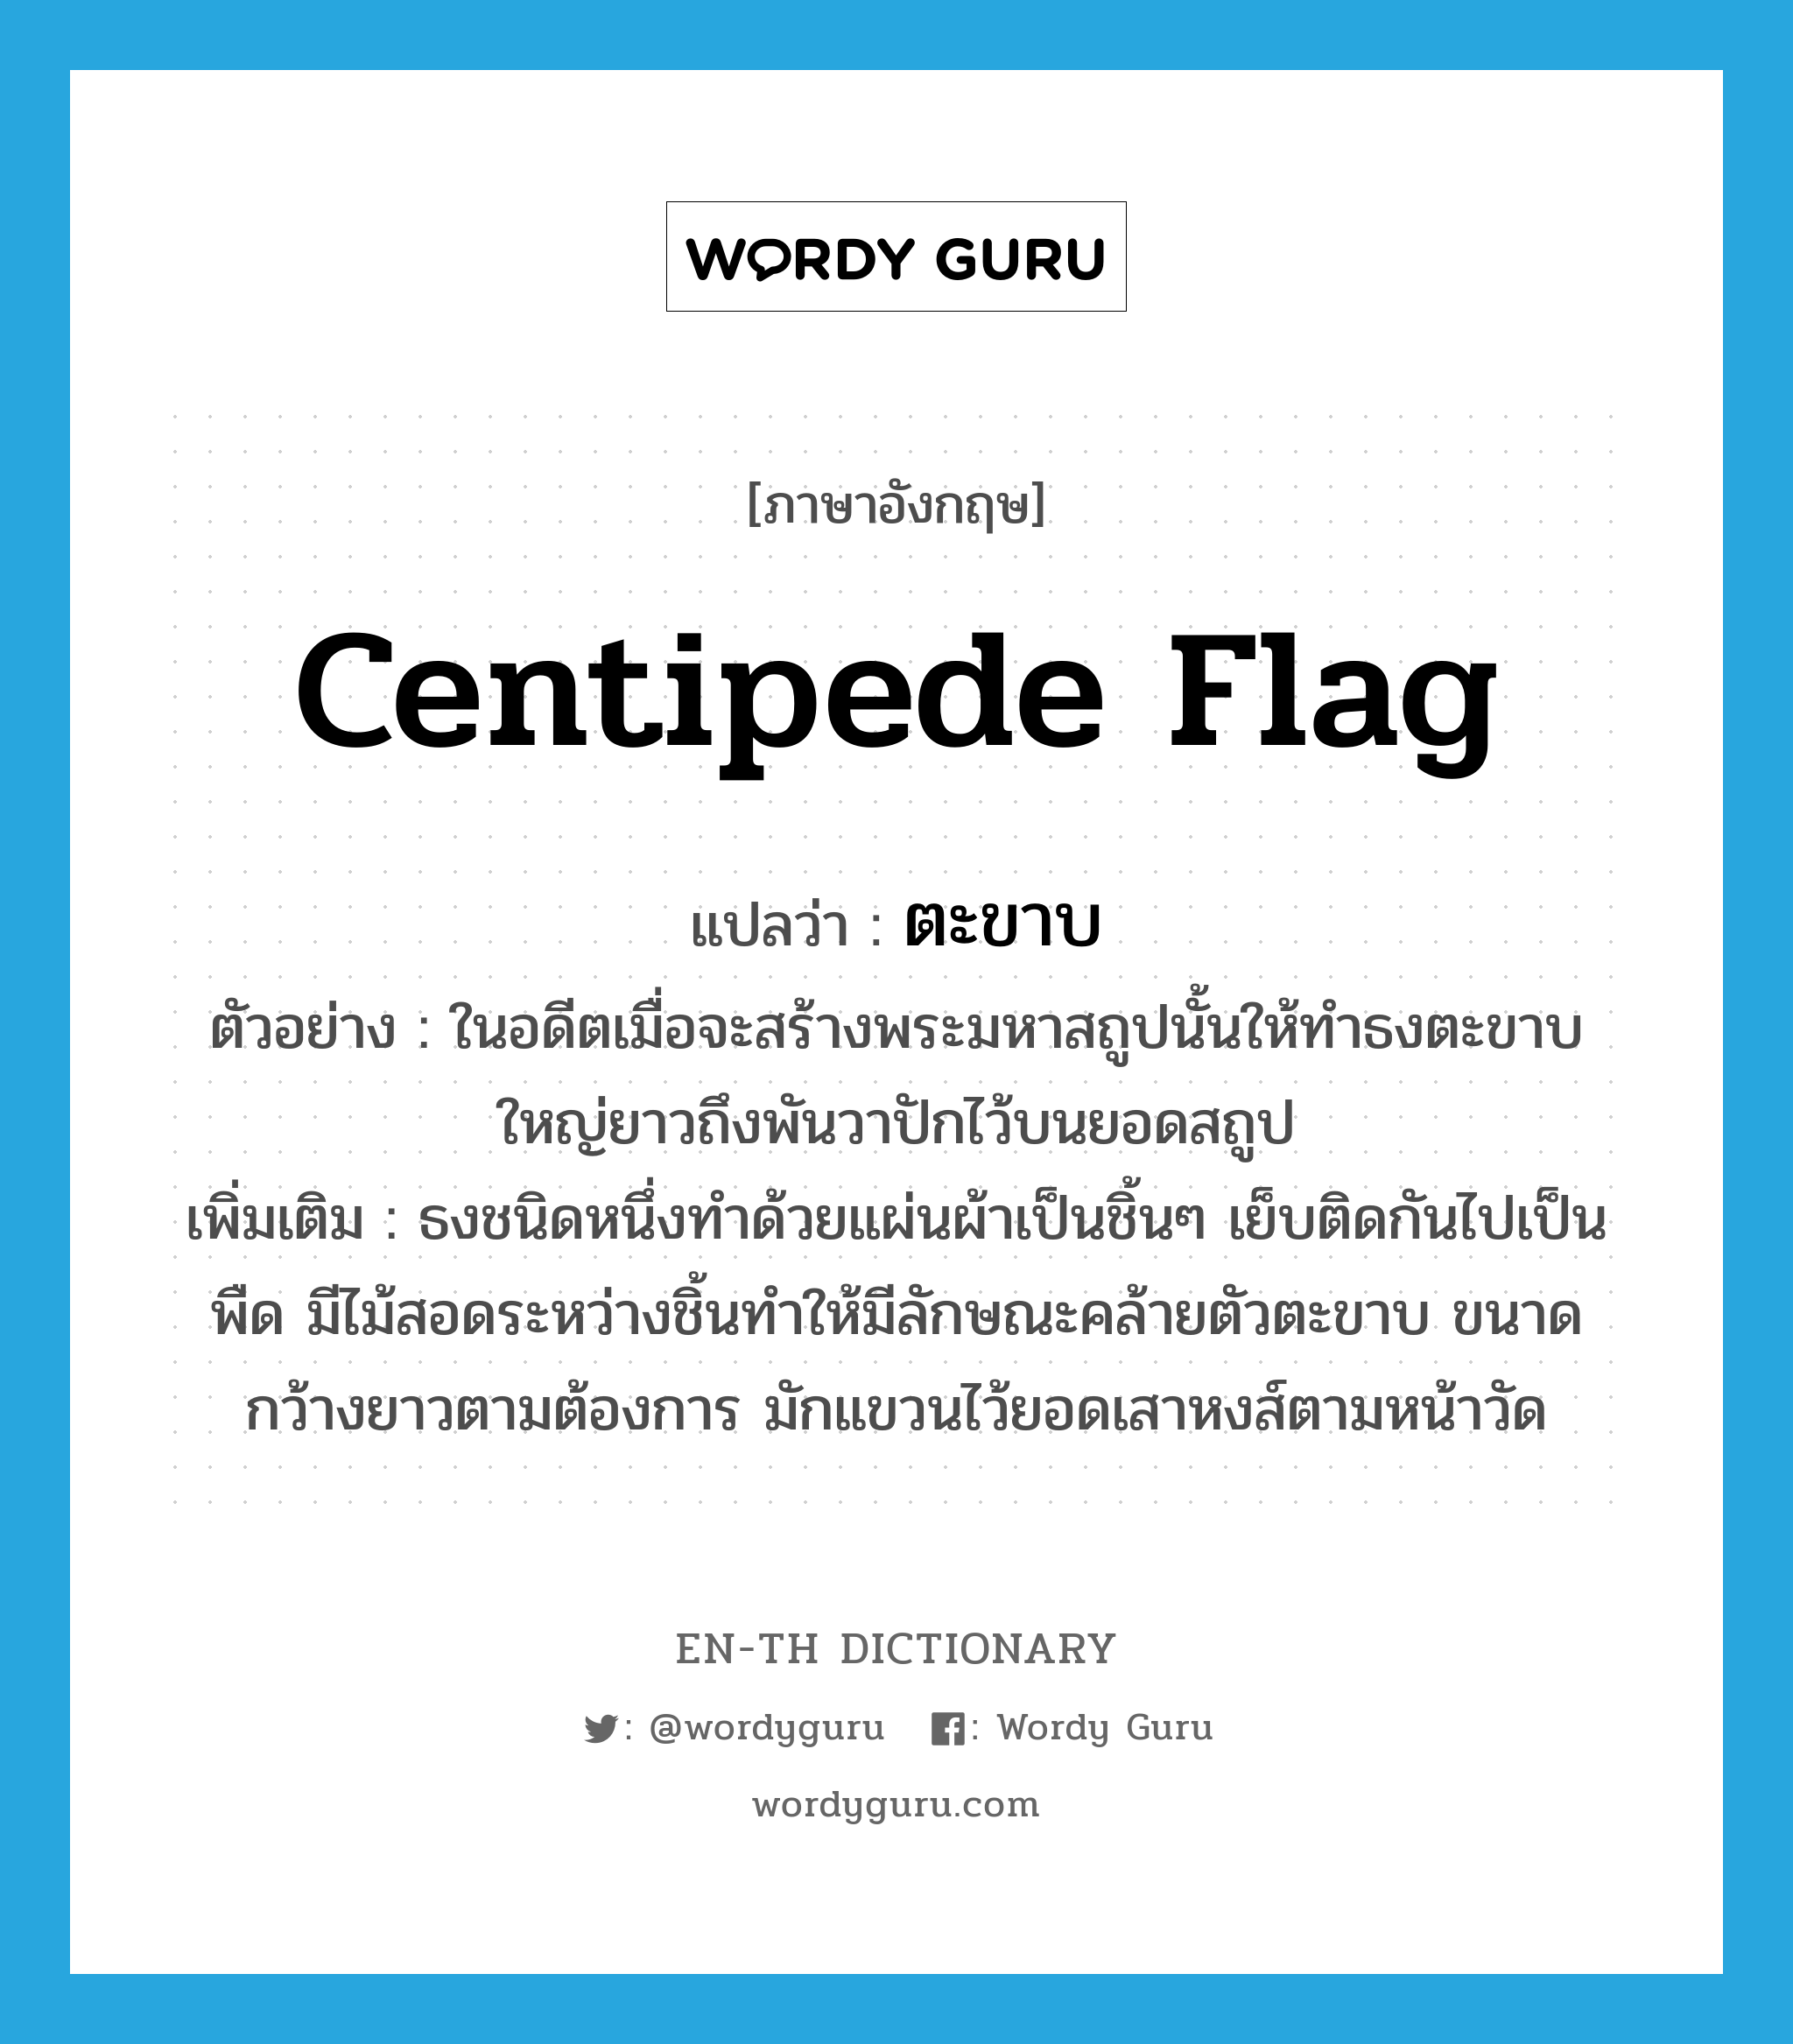 ตะขาบ ภาษาอังกฤษ?, คำศัพท์ภาษาอังกฤษ ตะขาบ แปลว่า centipede flag ประเภท N ตัวอย่าง ในอดีตเมื่อจะสร้างพระมหาสถูปนั้นให้ทำธงตะขาบใหญ่ยาวถึงพันวาปักไว้บนยอดสถูป เพิ่มเติม ธงชนิดหนึ่งทำด้วยแผ่นผ้าเป็นชิ้นๆ เย็บติดกันไปเป็นพืด มีไม้สอดระหว่างชิ้นทำให้มีลักษณะคล้ายตัวตะขาบ ขนาดกว้างยาวตามต้องการ มักแขวนไว้ยอดเสาหงส์ตามหน้าวัด หมวด N